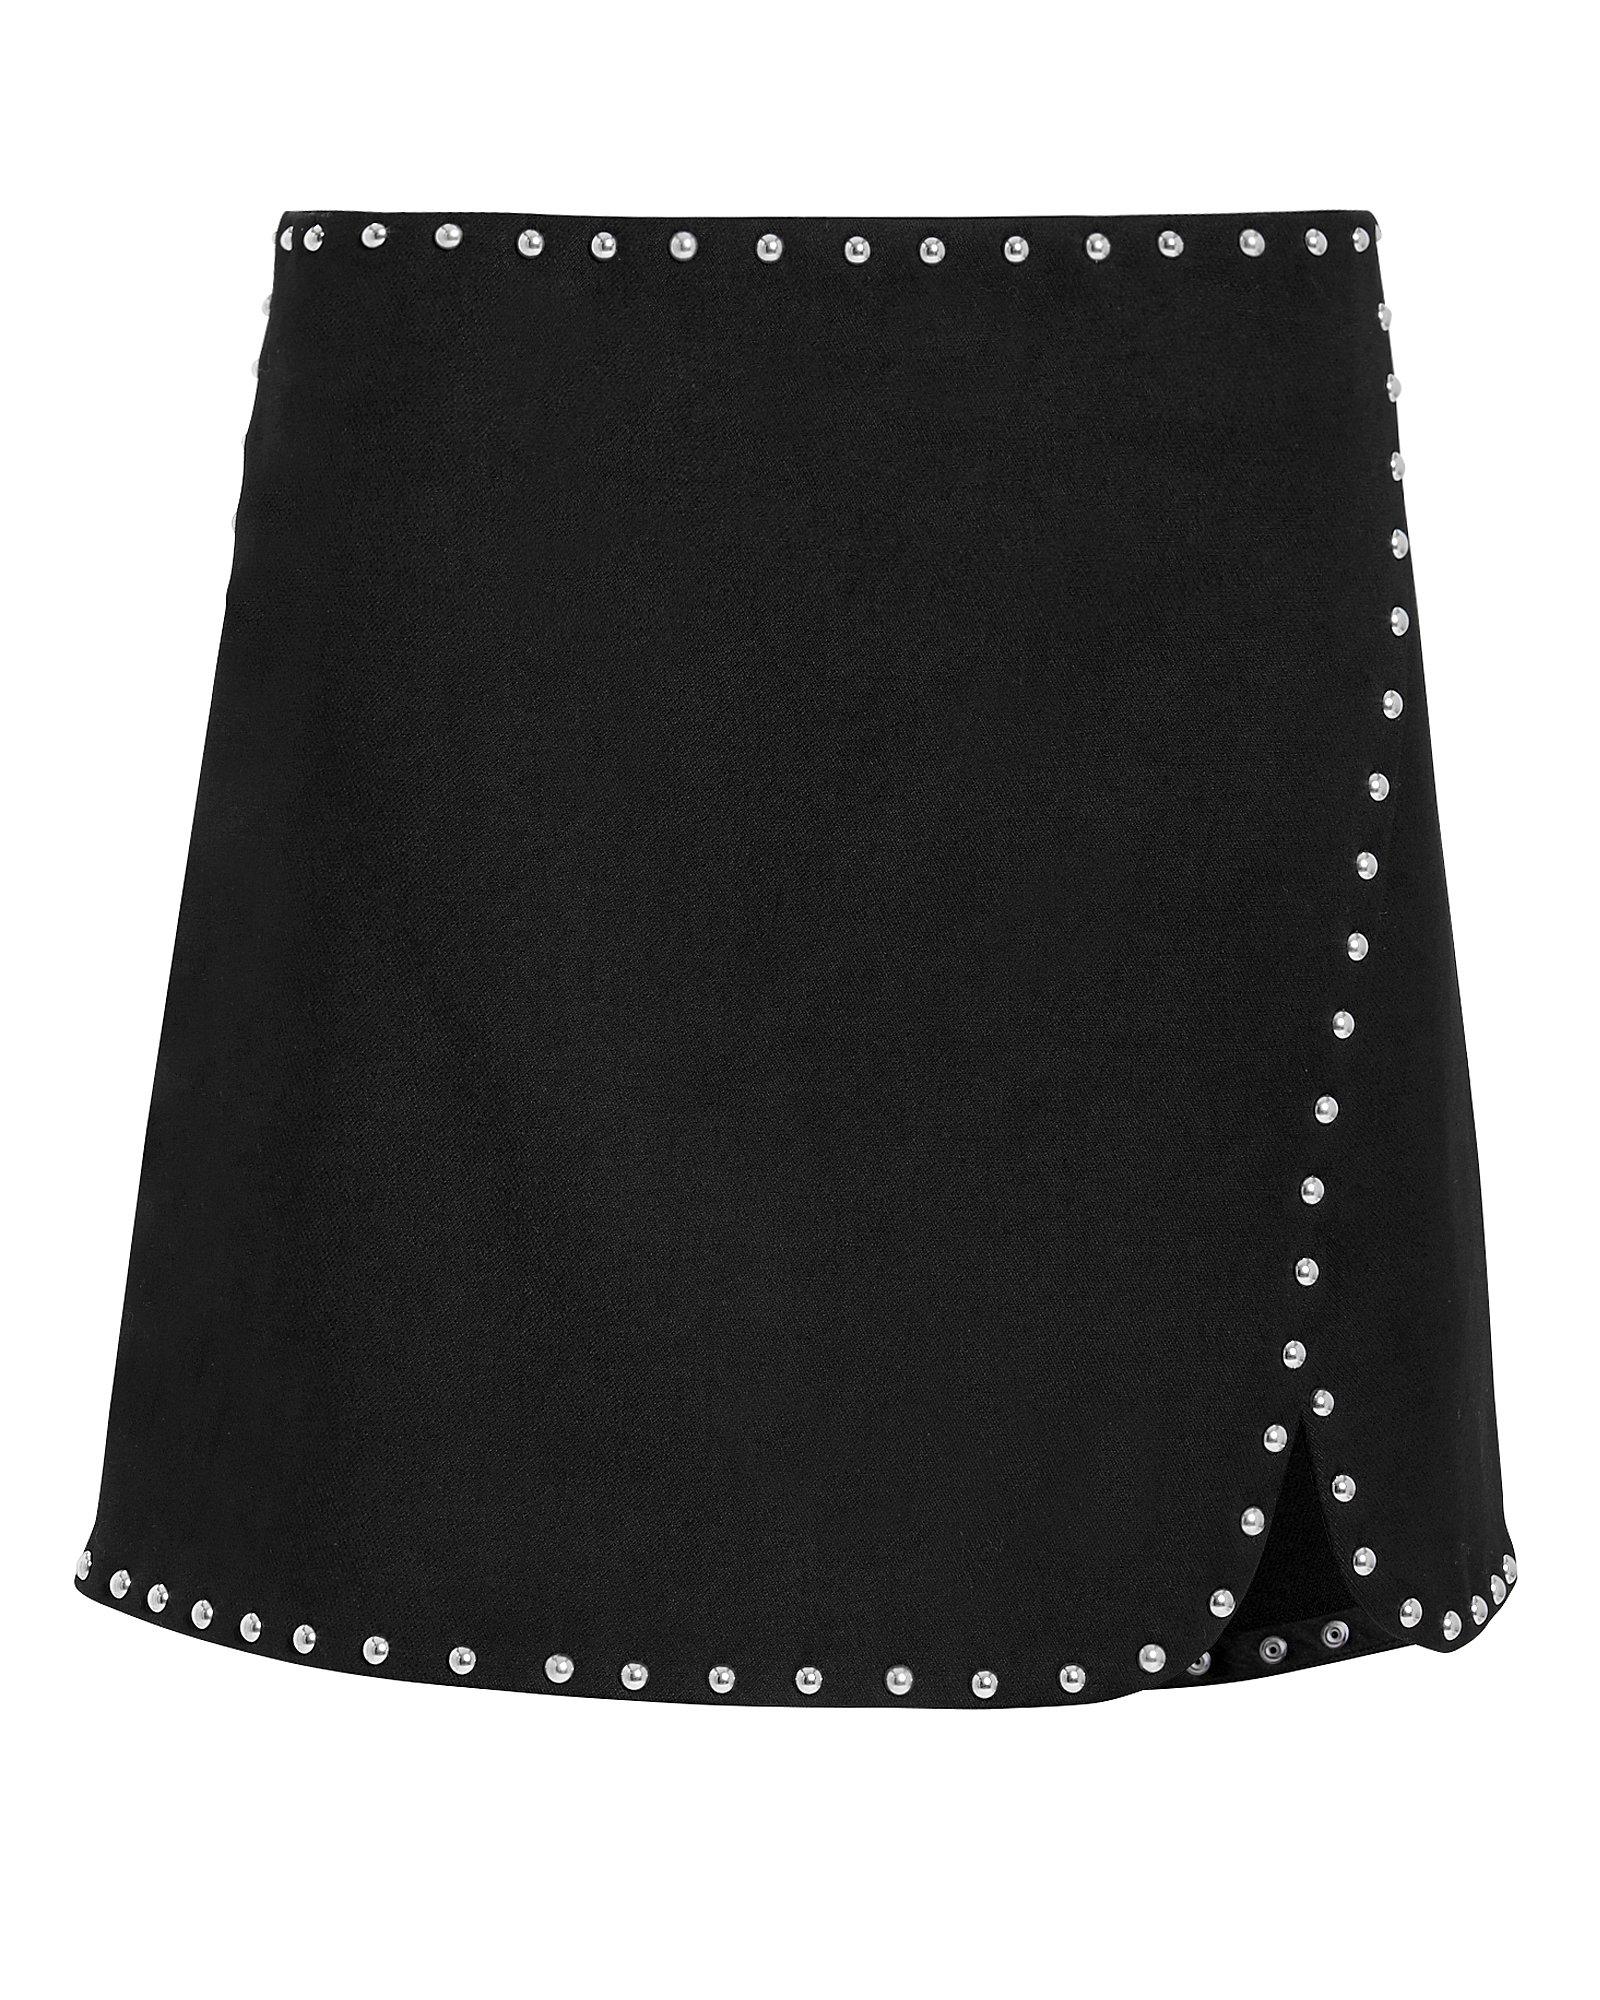 Helmut Lang Studded Overlap Mini Skirt In Black | ModeSens